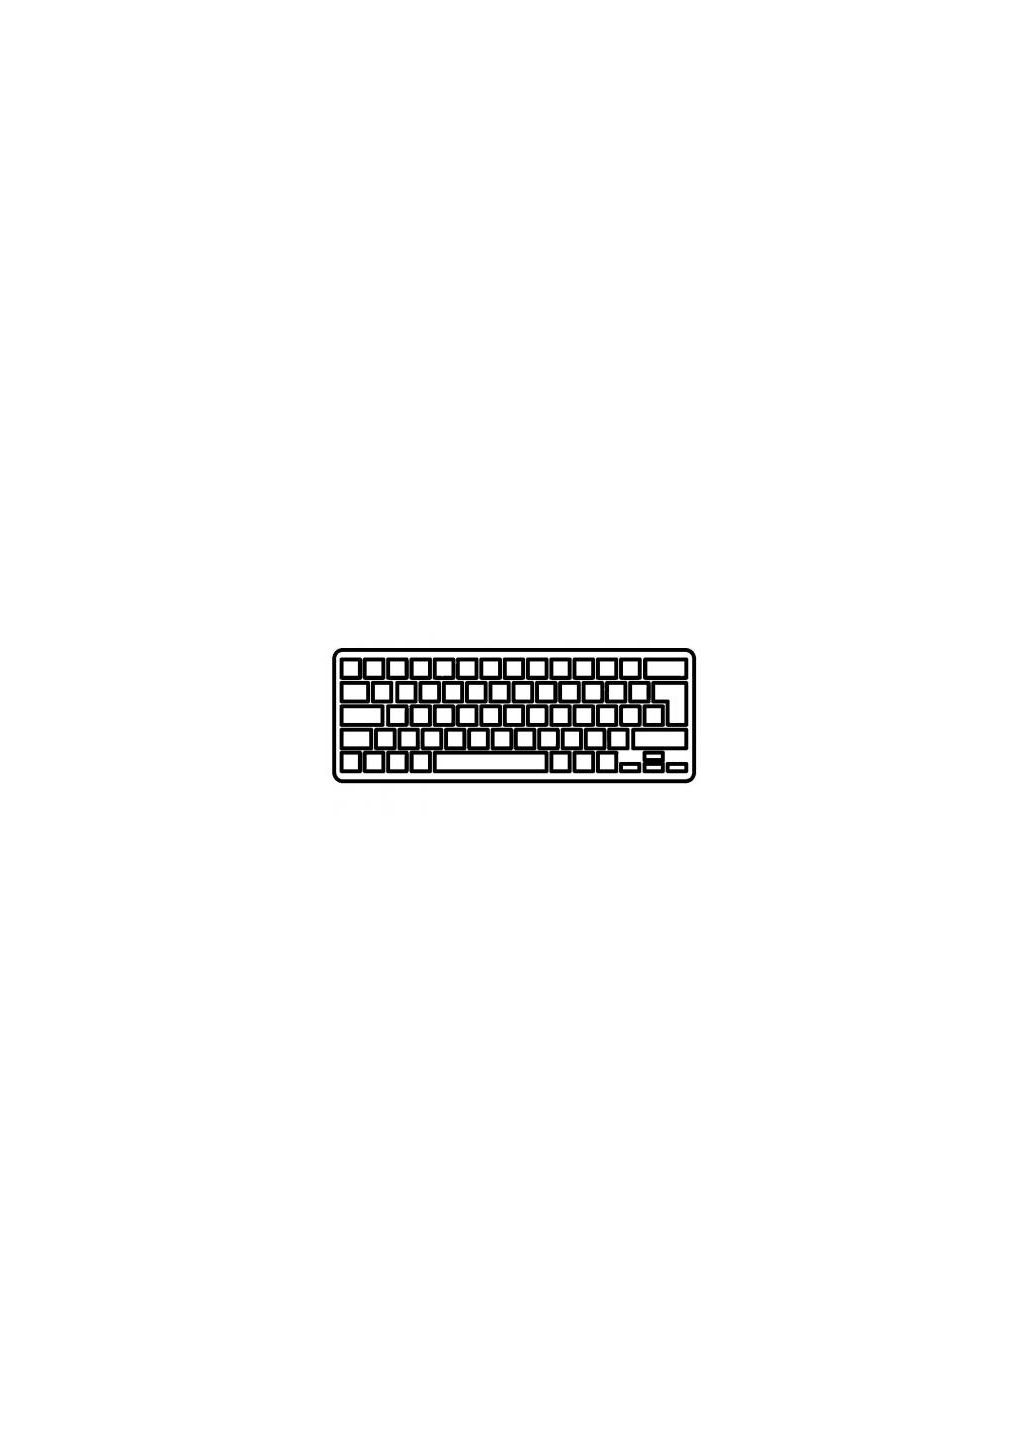 Клавиатура ноутбука Mini 2101000 Series черная с черной рамкой UA (A43824) HP mini 210-1000 series черная с черной рамкой ua (276707583)